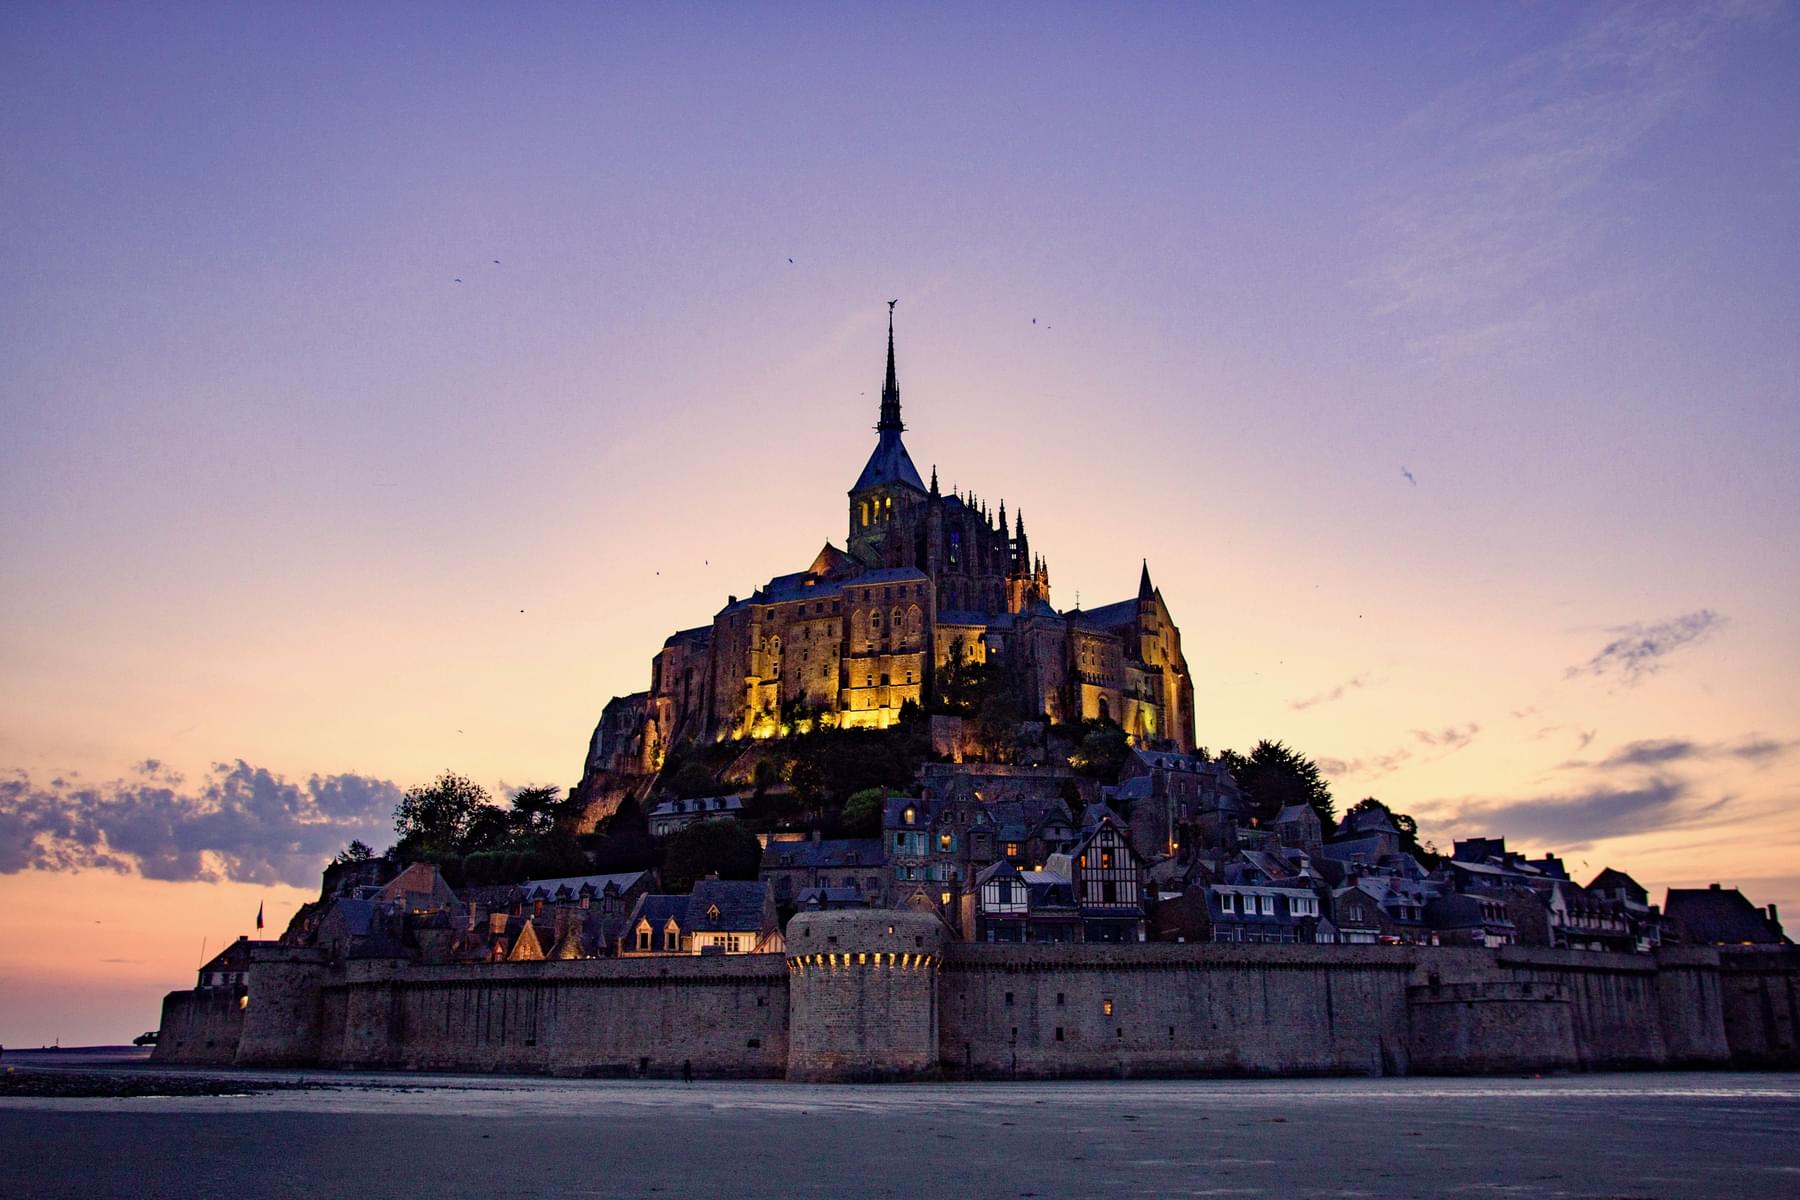 How to Reach Mont Saint Michel